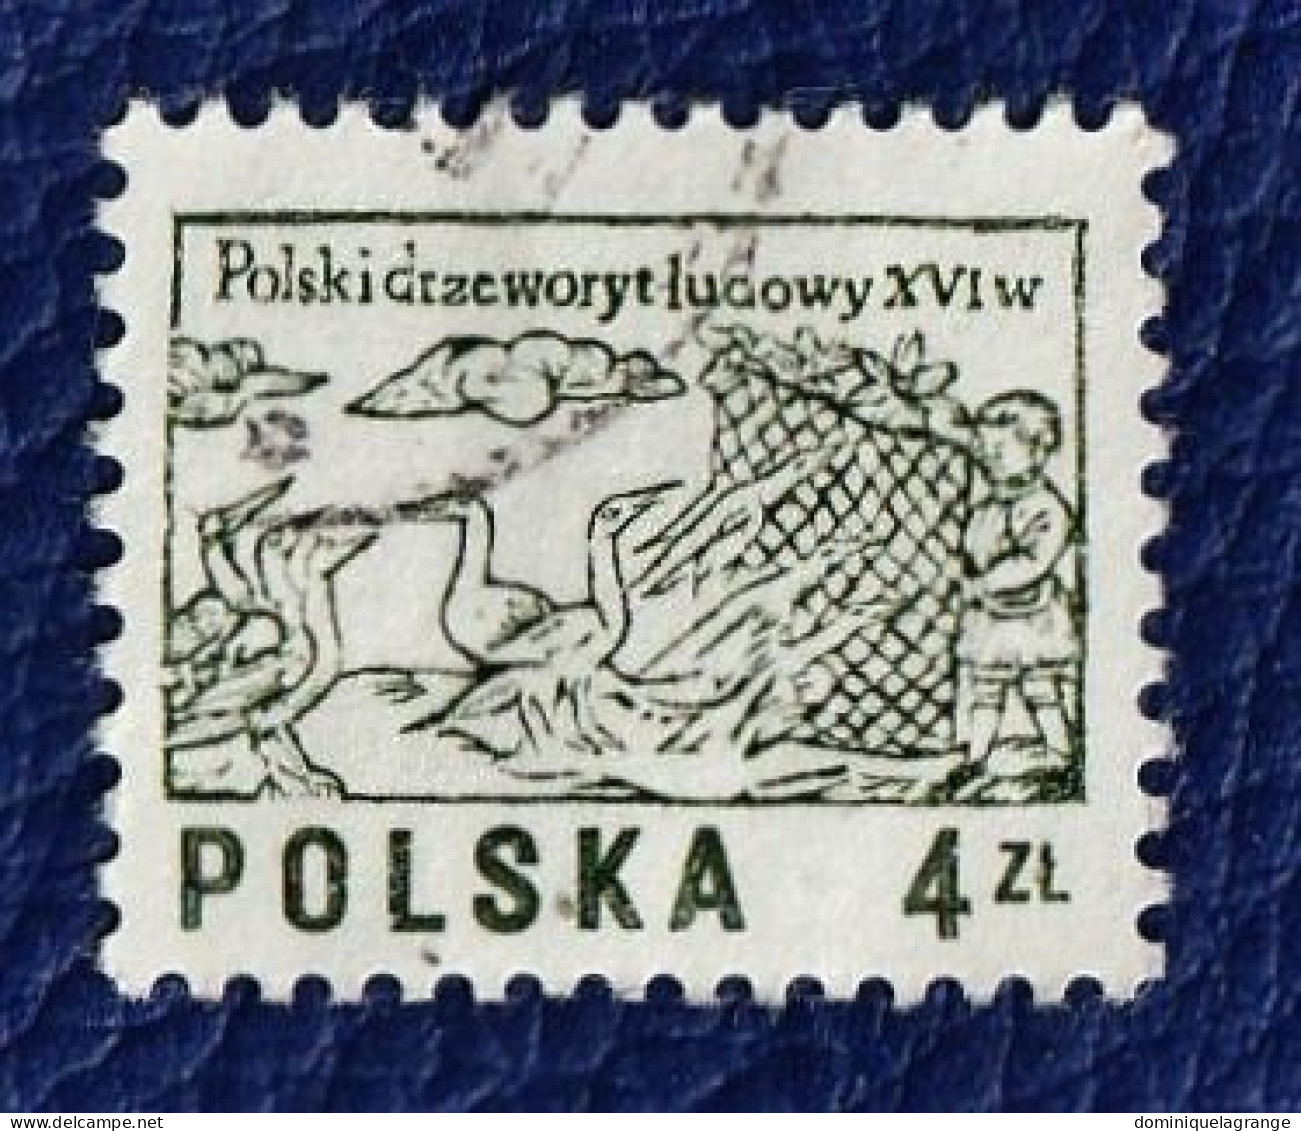 10 timbres de Pologne "vieilles gravures" et "scènes de guerre" de 1951 à 1974